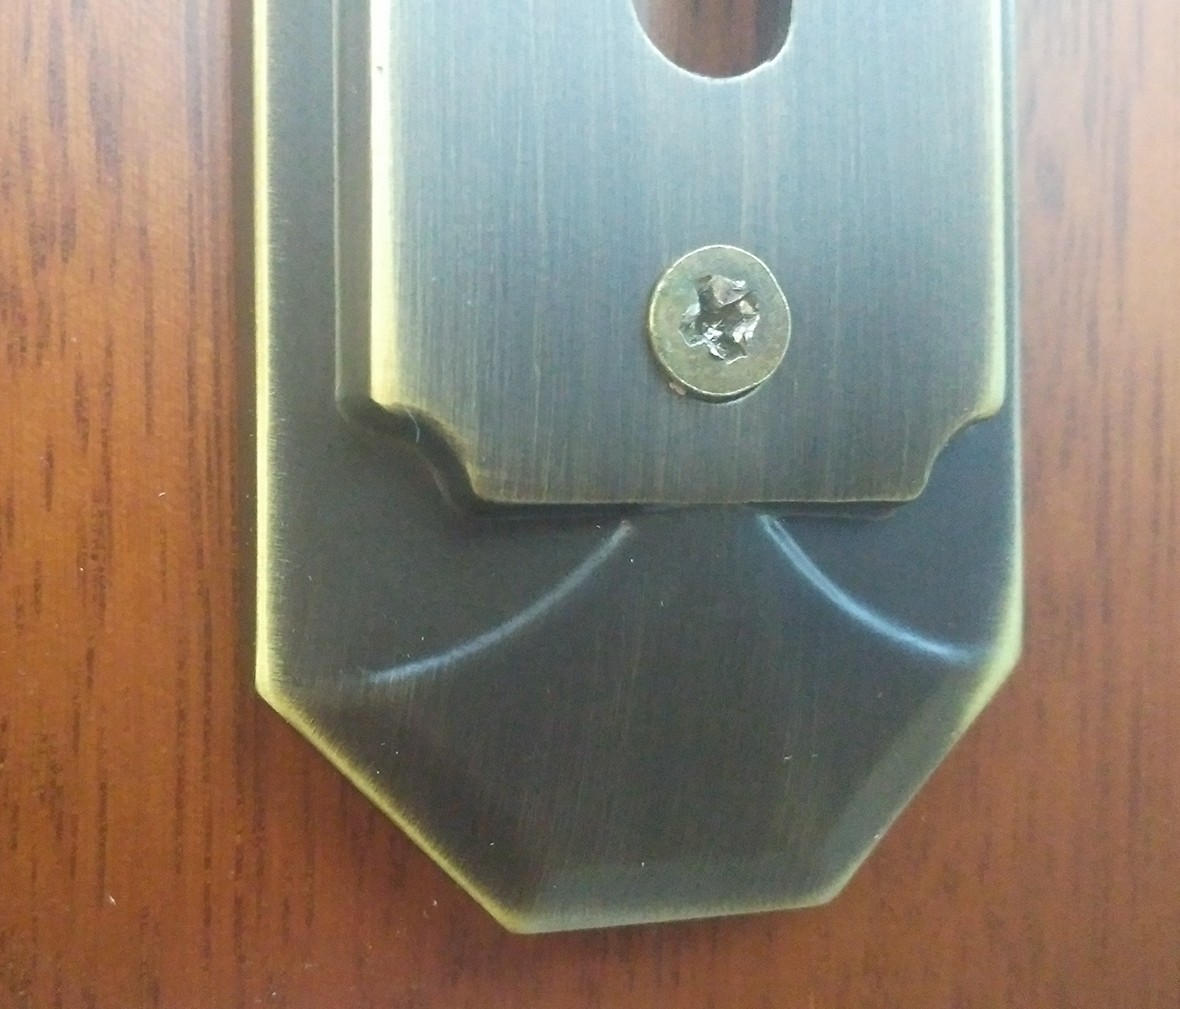 晾霸五金 米开朗626-28古铜型号门锁 铜材质 优质门锁 情景 细节